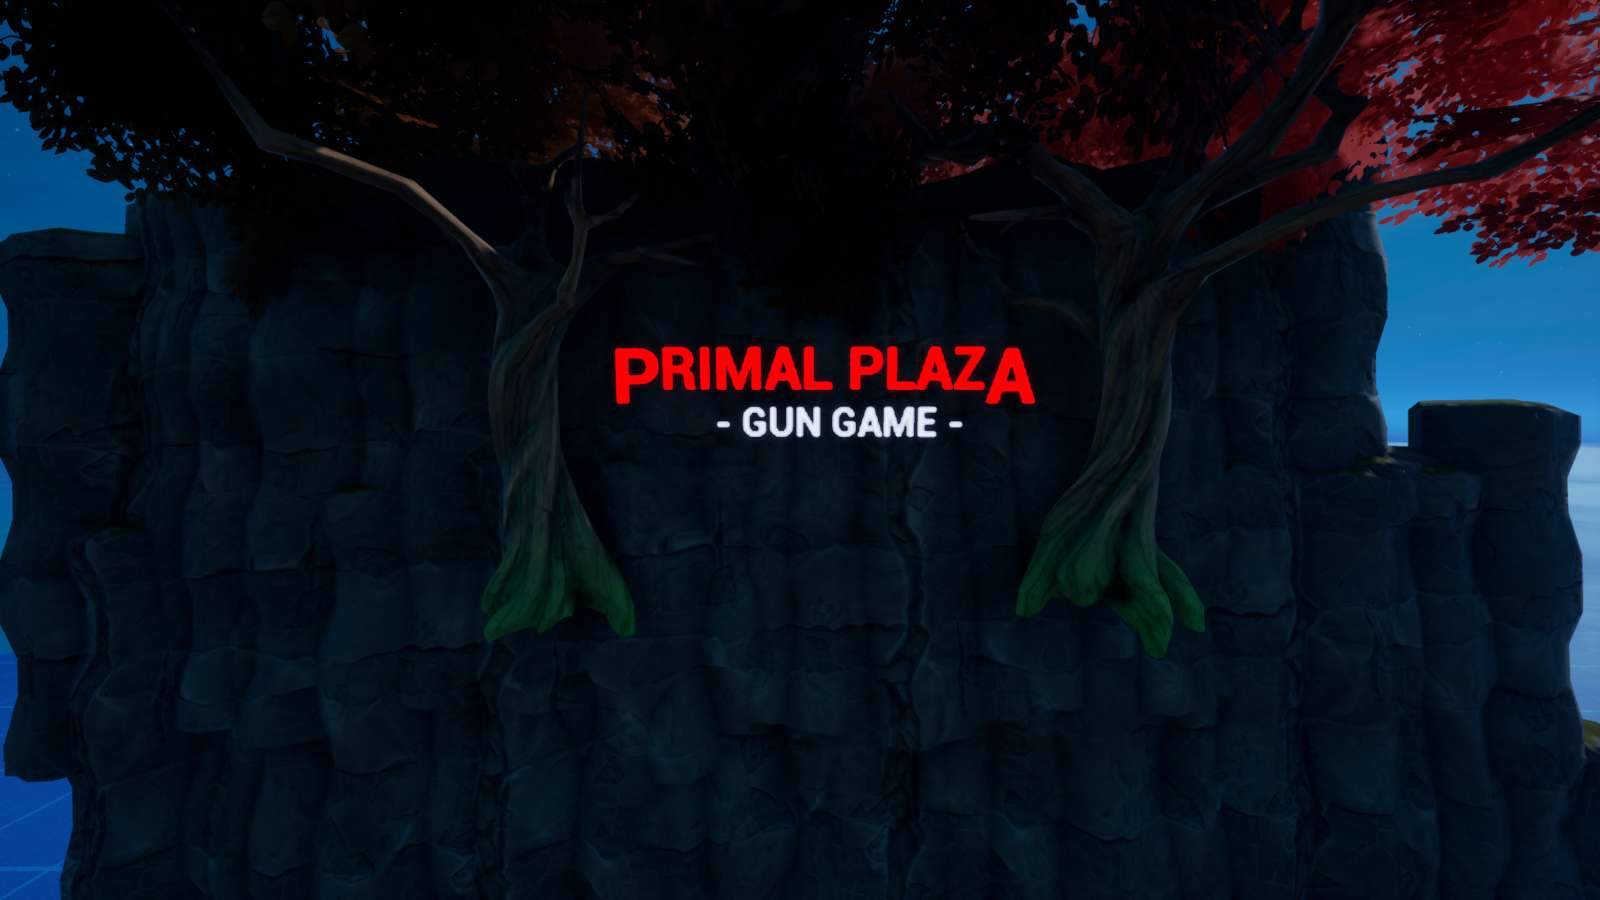 PRIMAL PLAZA - GUN GAME